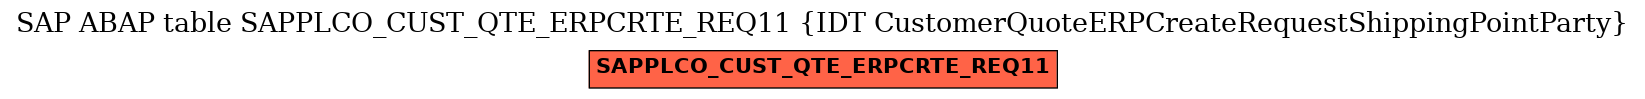 E-R Diagram for table SAPPLCO_CUST_QTE_ERPCRTE_REQ11 (IDT CustomerQuoteERPCreateRequestShippingPointParty)